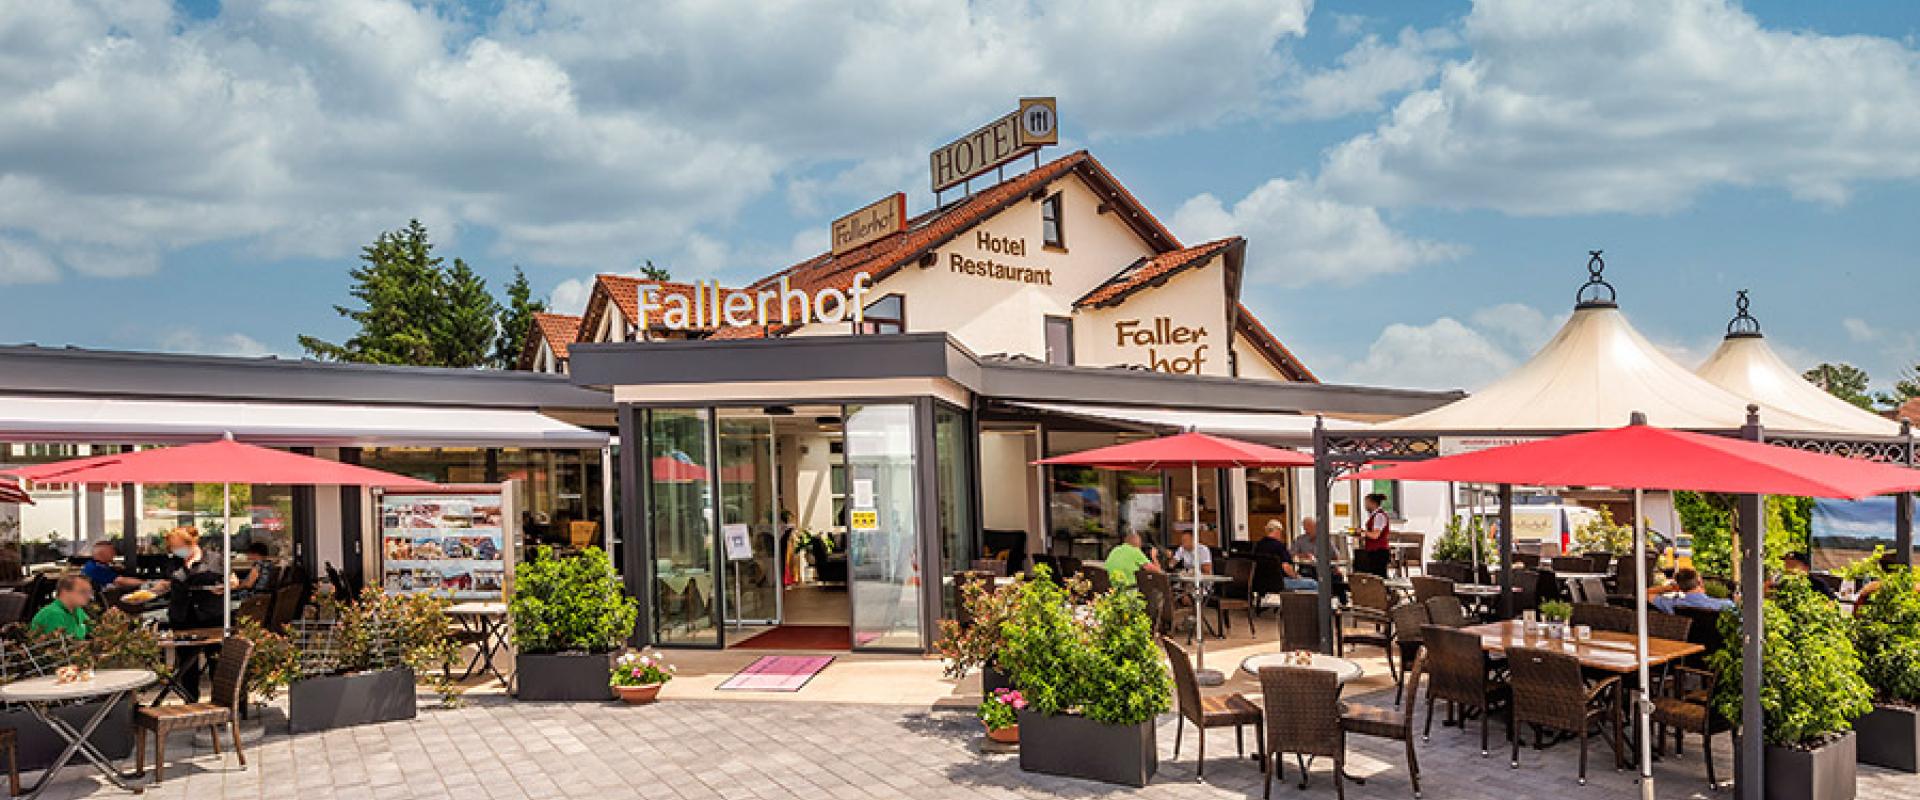 12526 Fallerhof Ansicht ql-restaurant.jpeg